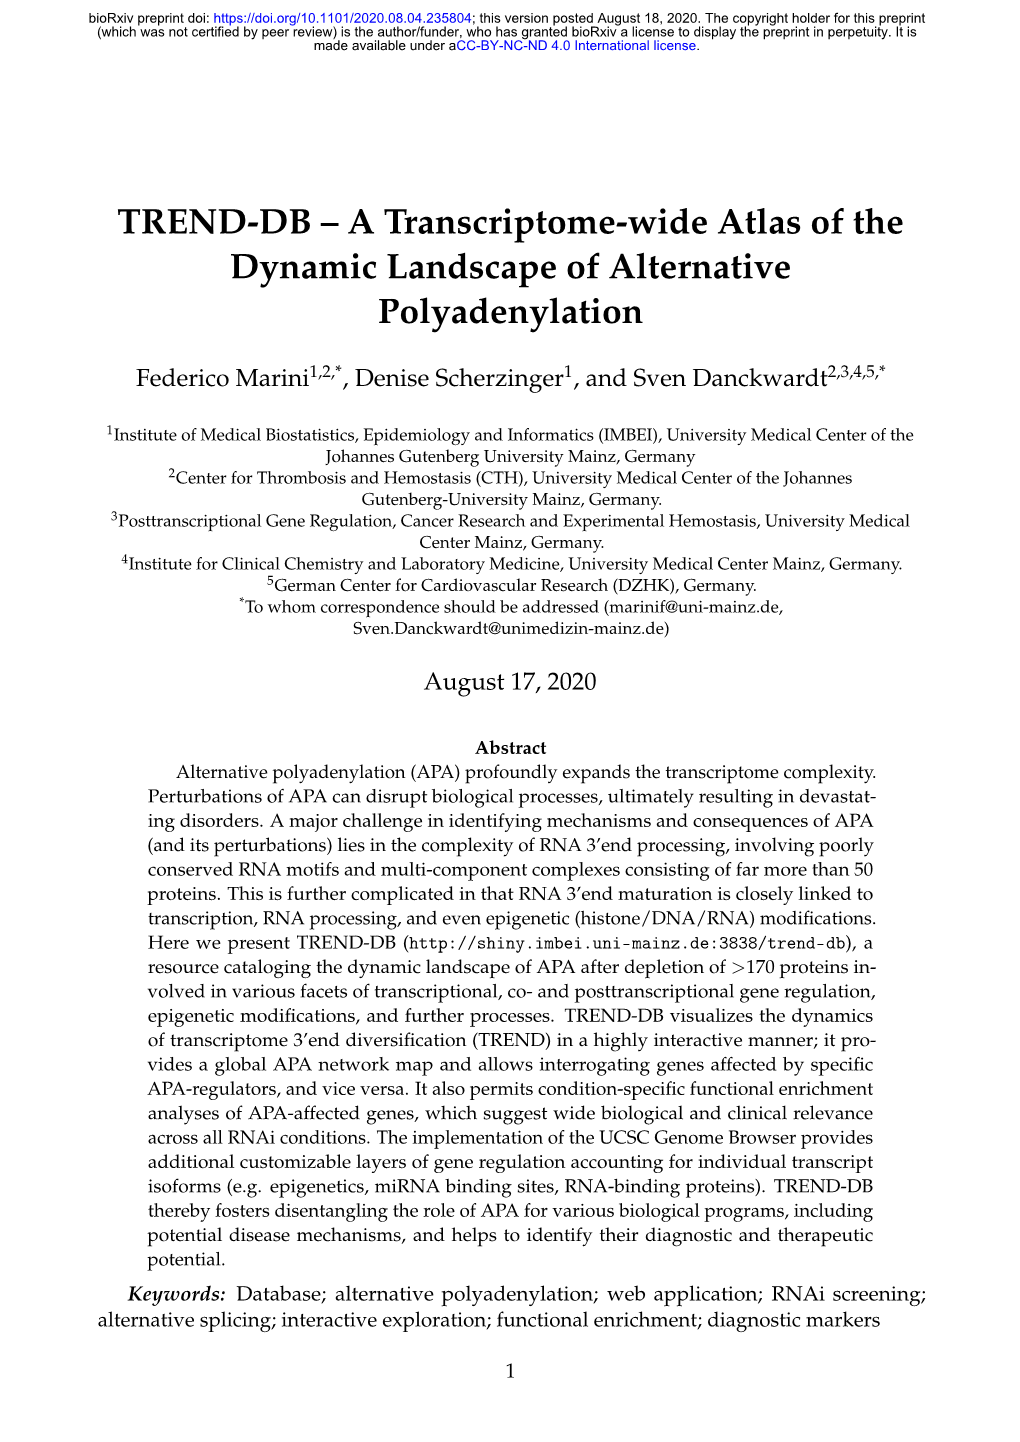 TREND-DB – a Transcriptome-Wide Atlas of the Dynamic Landscape of Alternative Polyadenylation